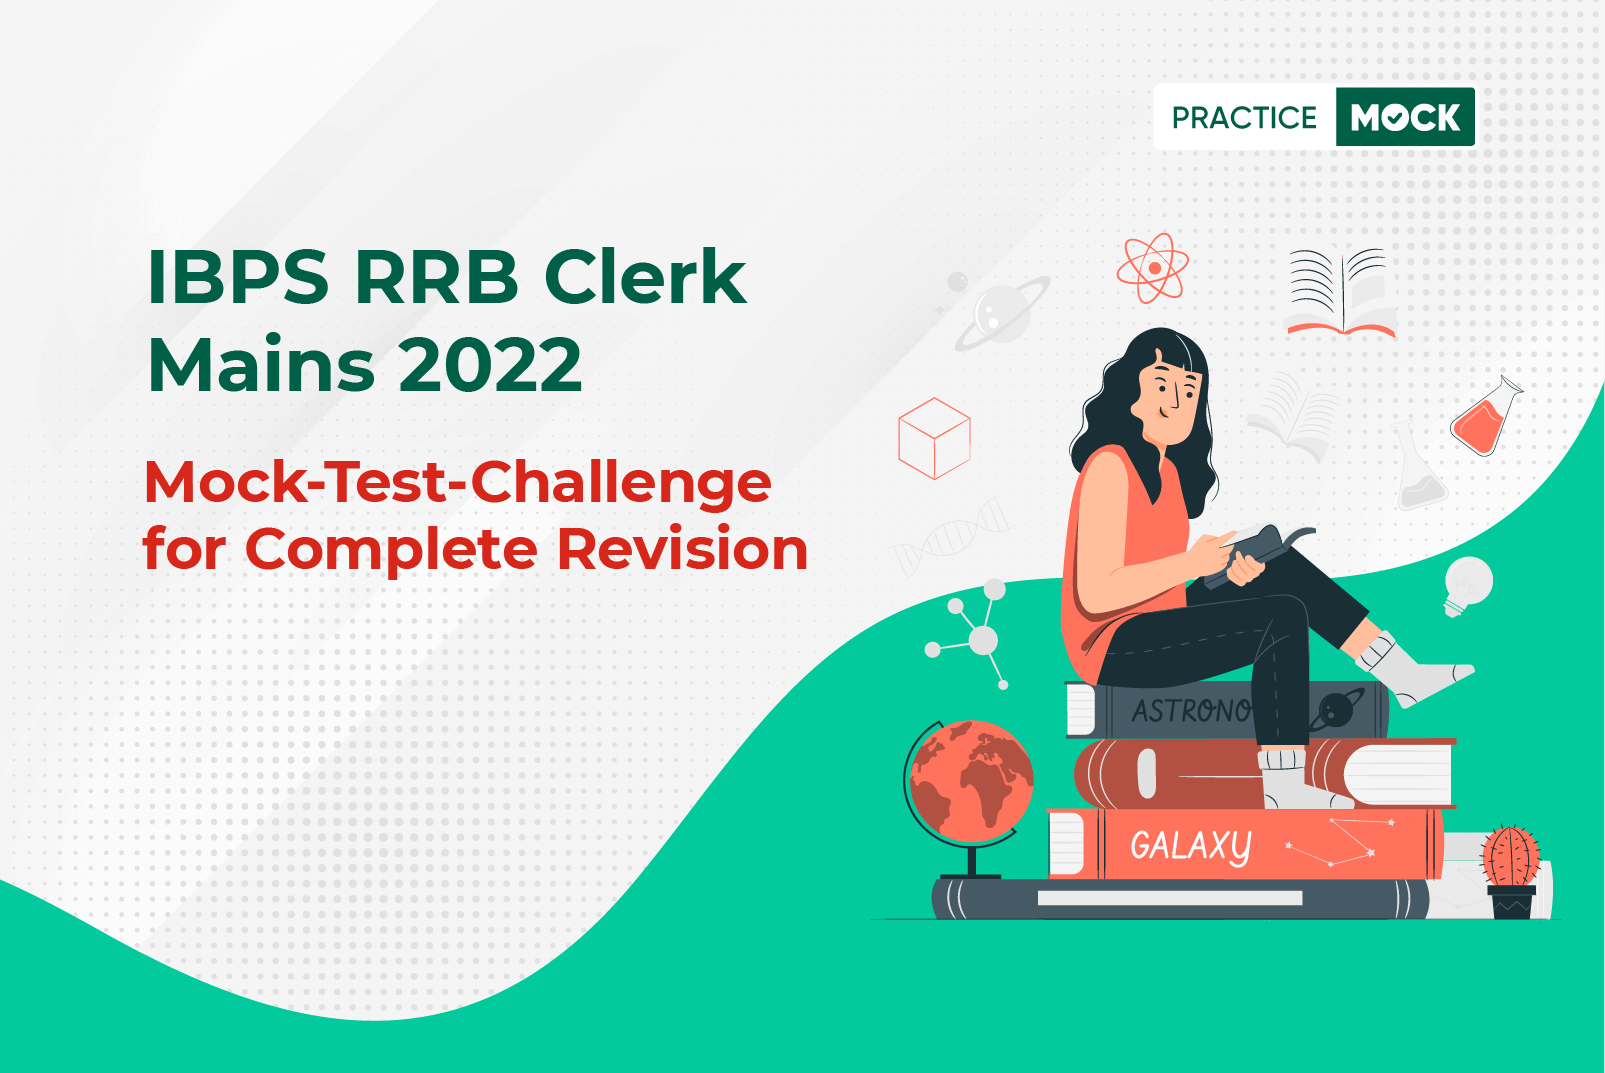 rrb-clerk-mains-2022-mock-test-challenge-practicemock